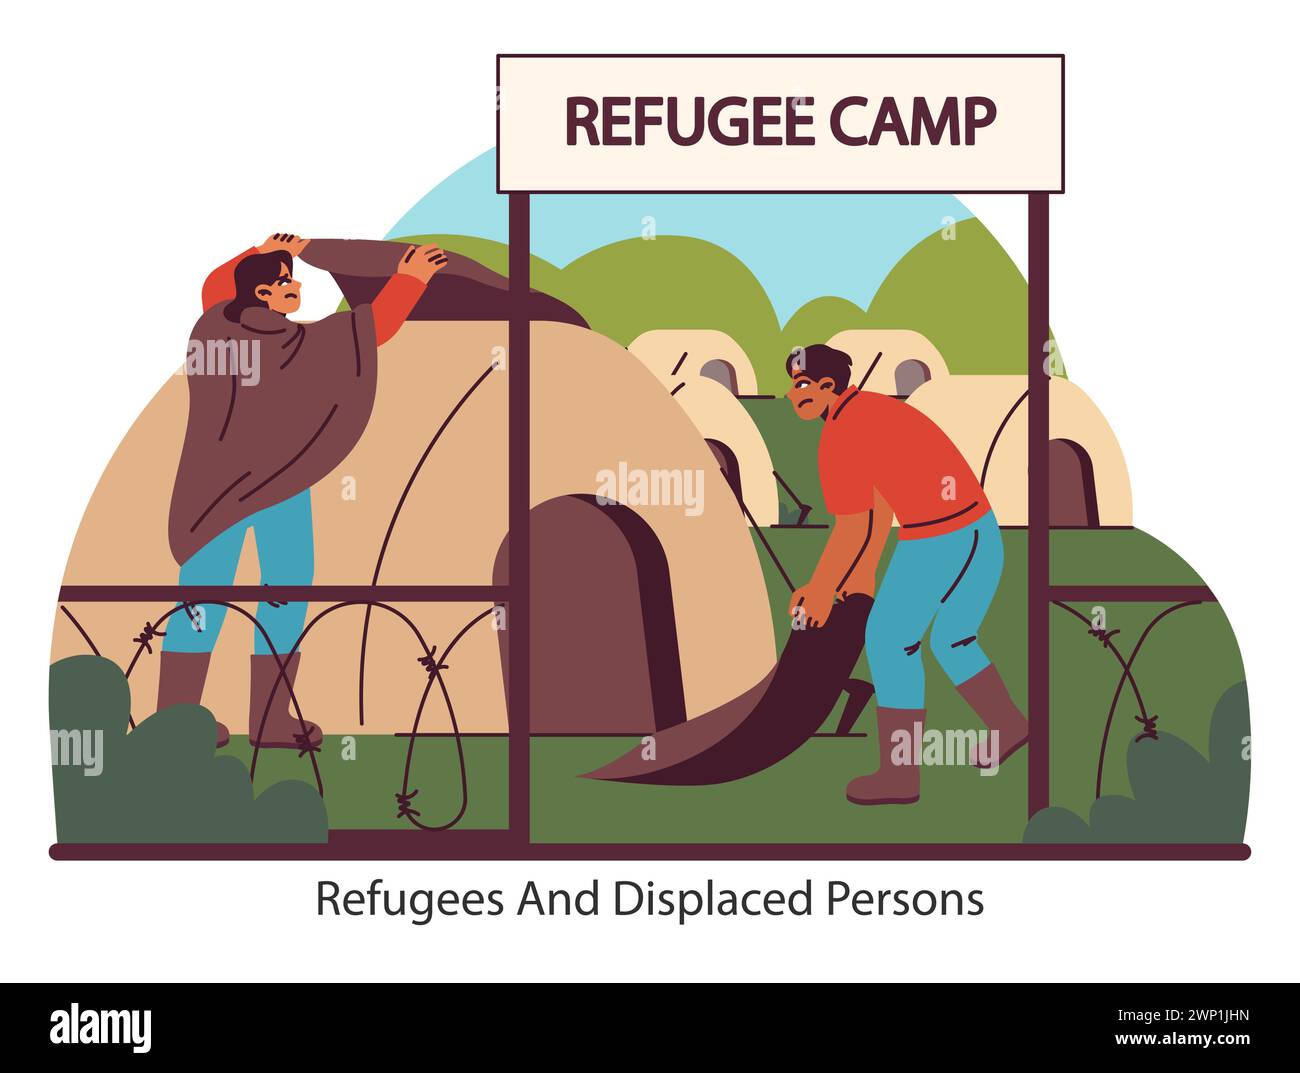 Humanitäre Krisensituation. Personen in einem Flüchtlingslager suchen Zuflucht und Sicherheit. Die harte Realität der Vertreibung und der Suche nach Zuflucht. Illustration des flachen Vektors. Stock Vektor